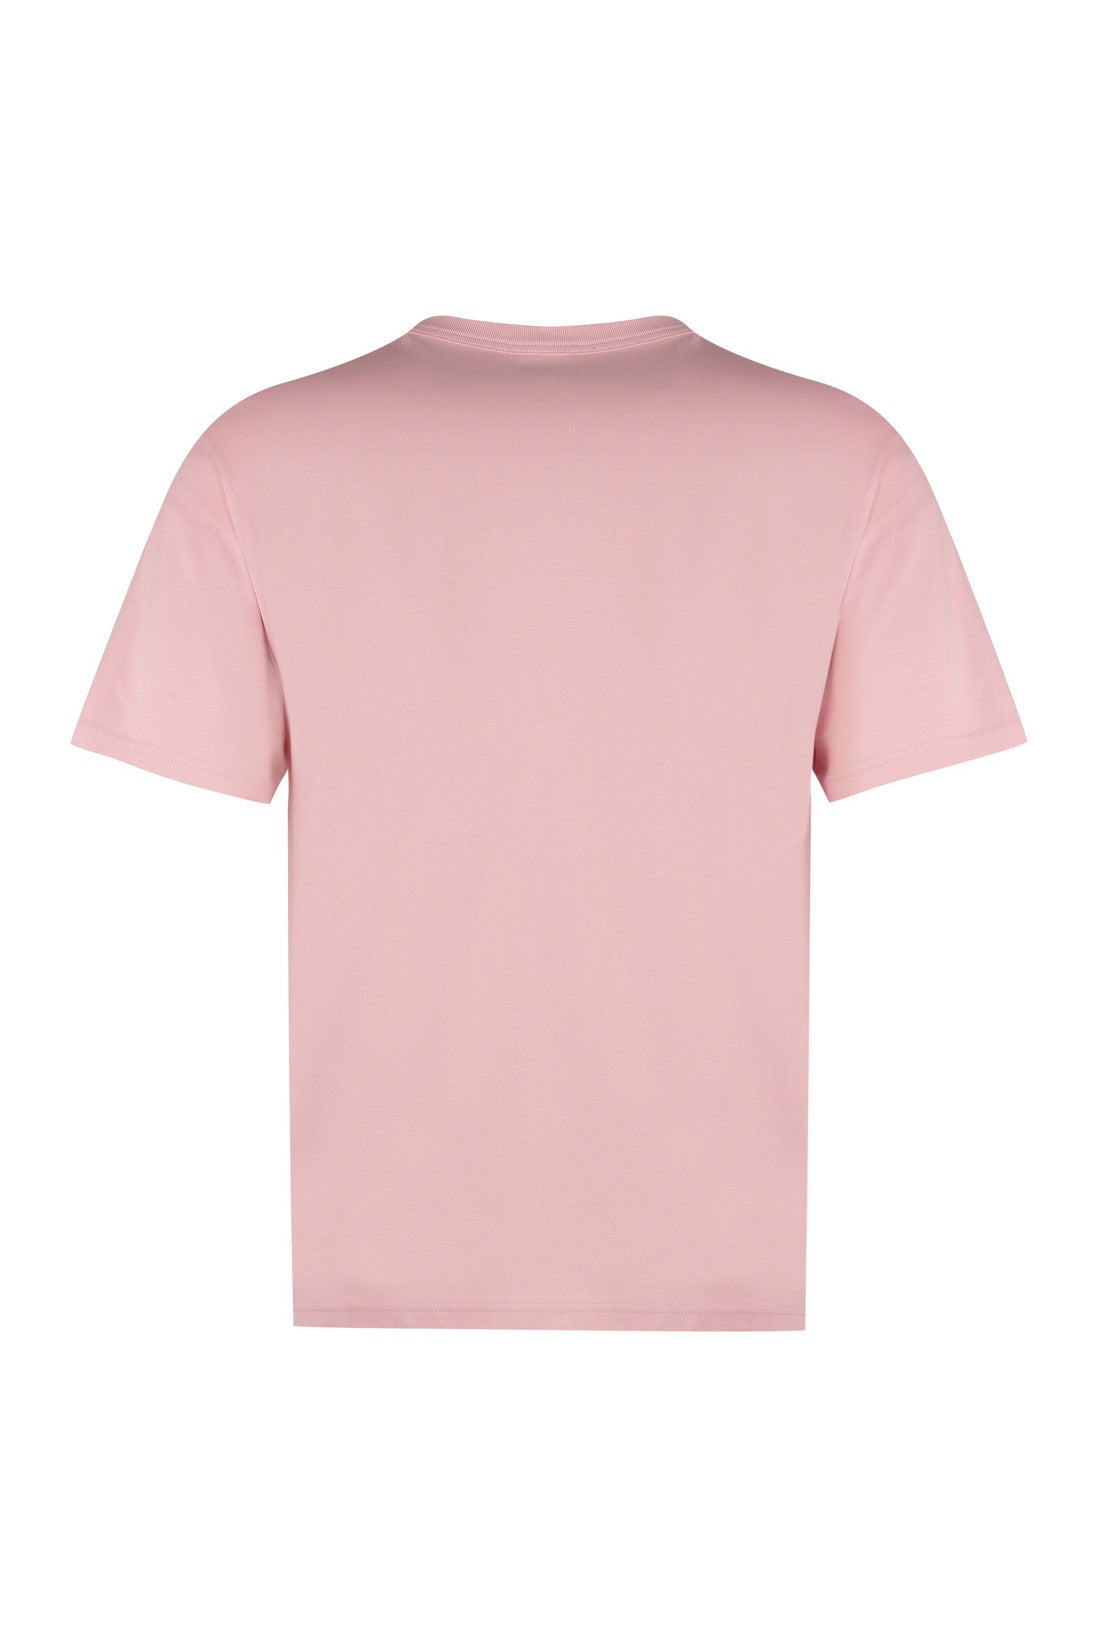 K-Way-OUTLET-SALE-Fantome cotton T-shirt-ARCHIVIST